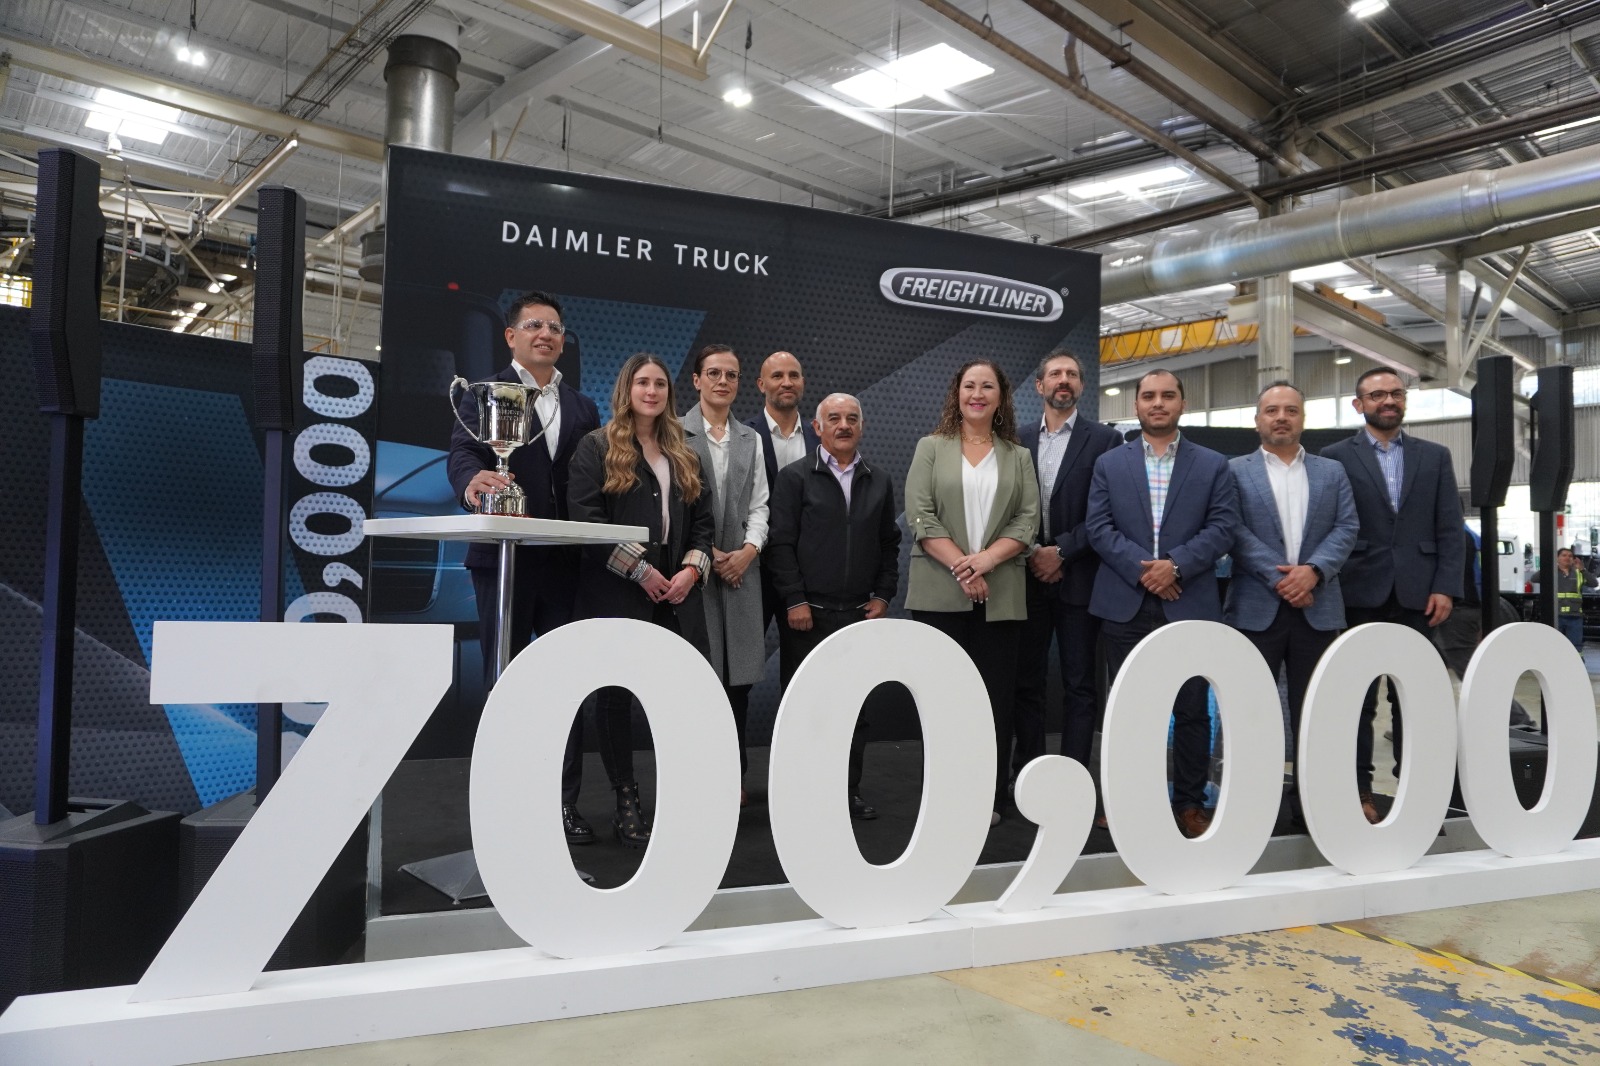 Celebró Daimler Truck la producción de la unidad 700,000